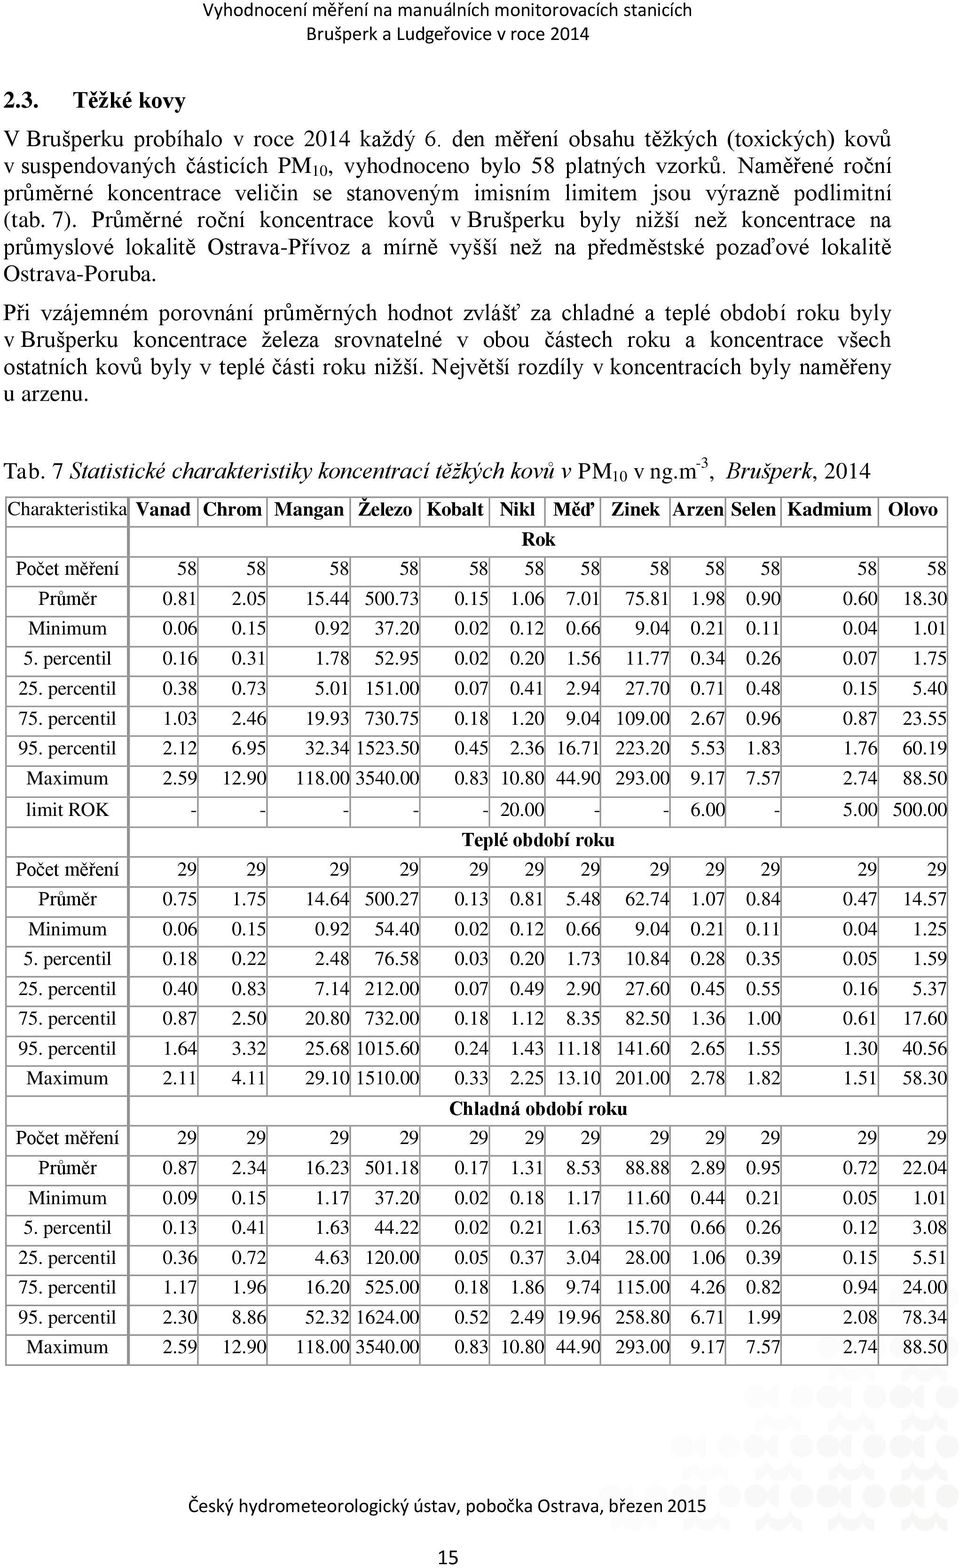 Průměrné roční koncentrace kovů v u byly nižší než koncentrace na průmyslové lokalitě Ostrava-Přívoz a mírně vyšší než na předměstské pozaďové lokalitě Ostrava-Poruba.